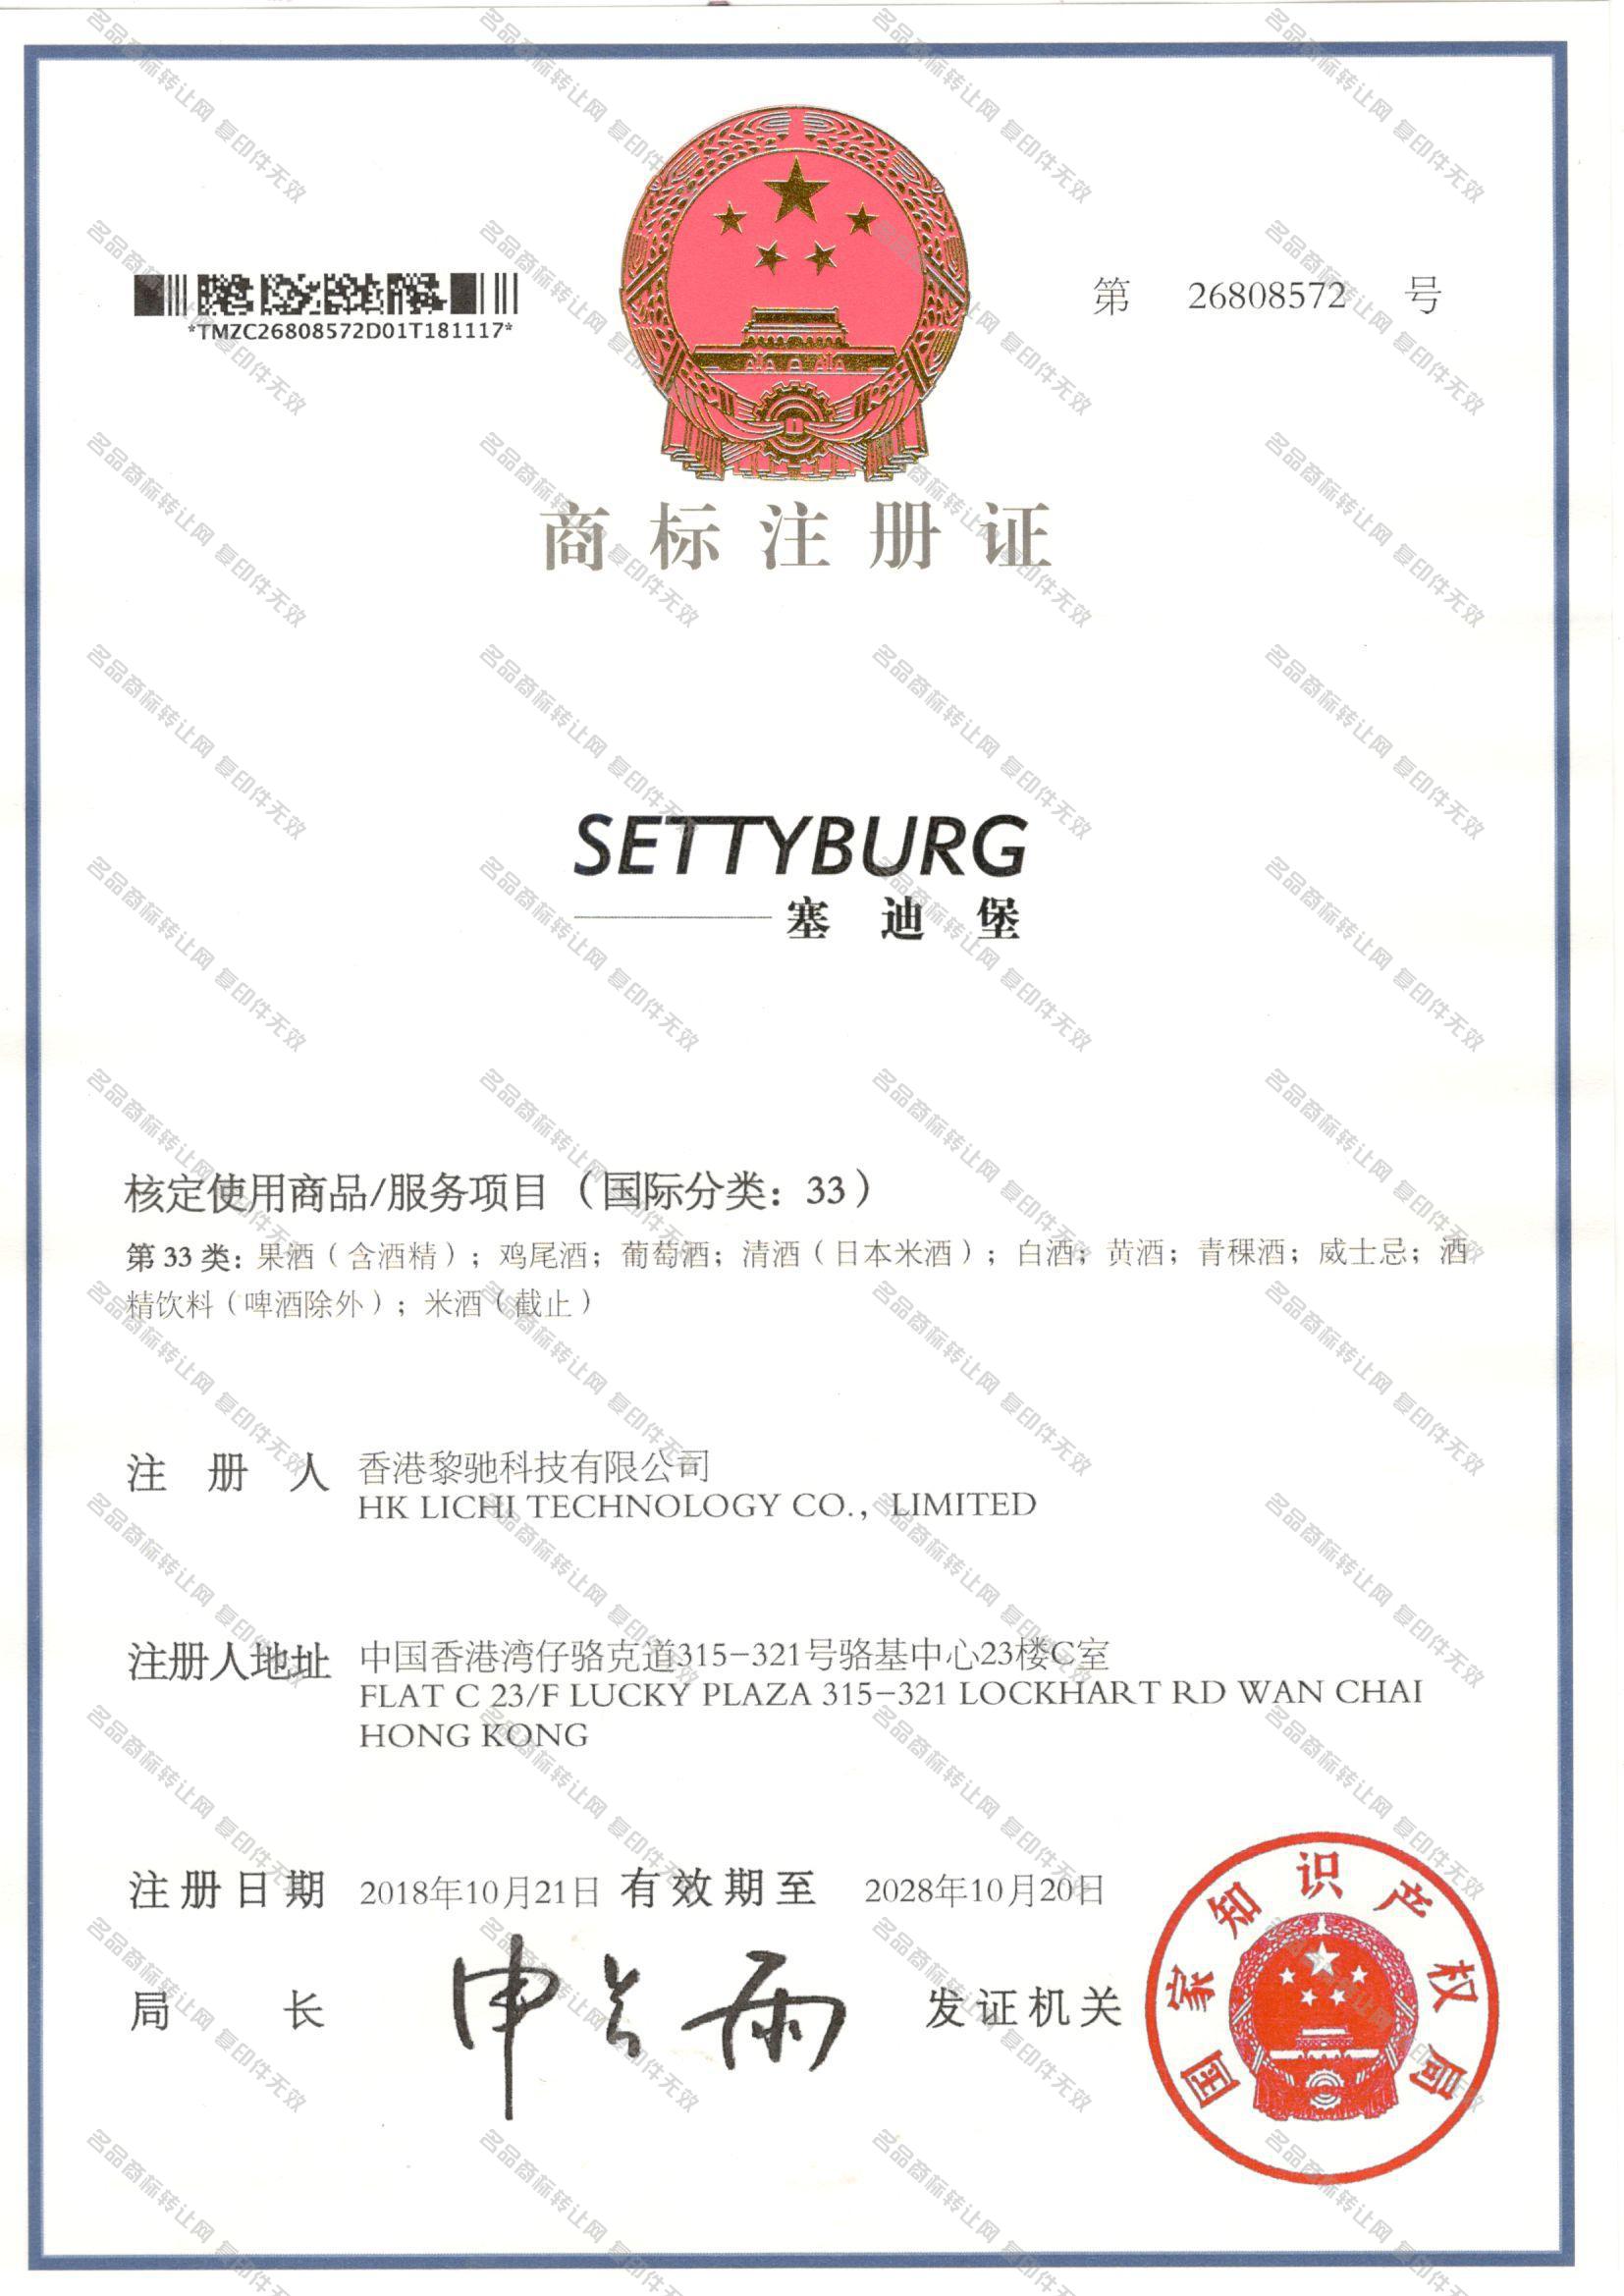 塞迪堡 SETTYBURG注册证